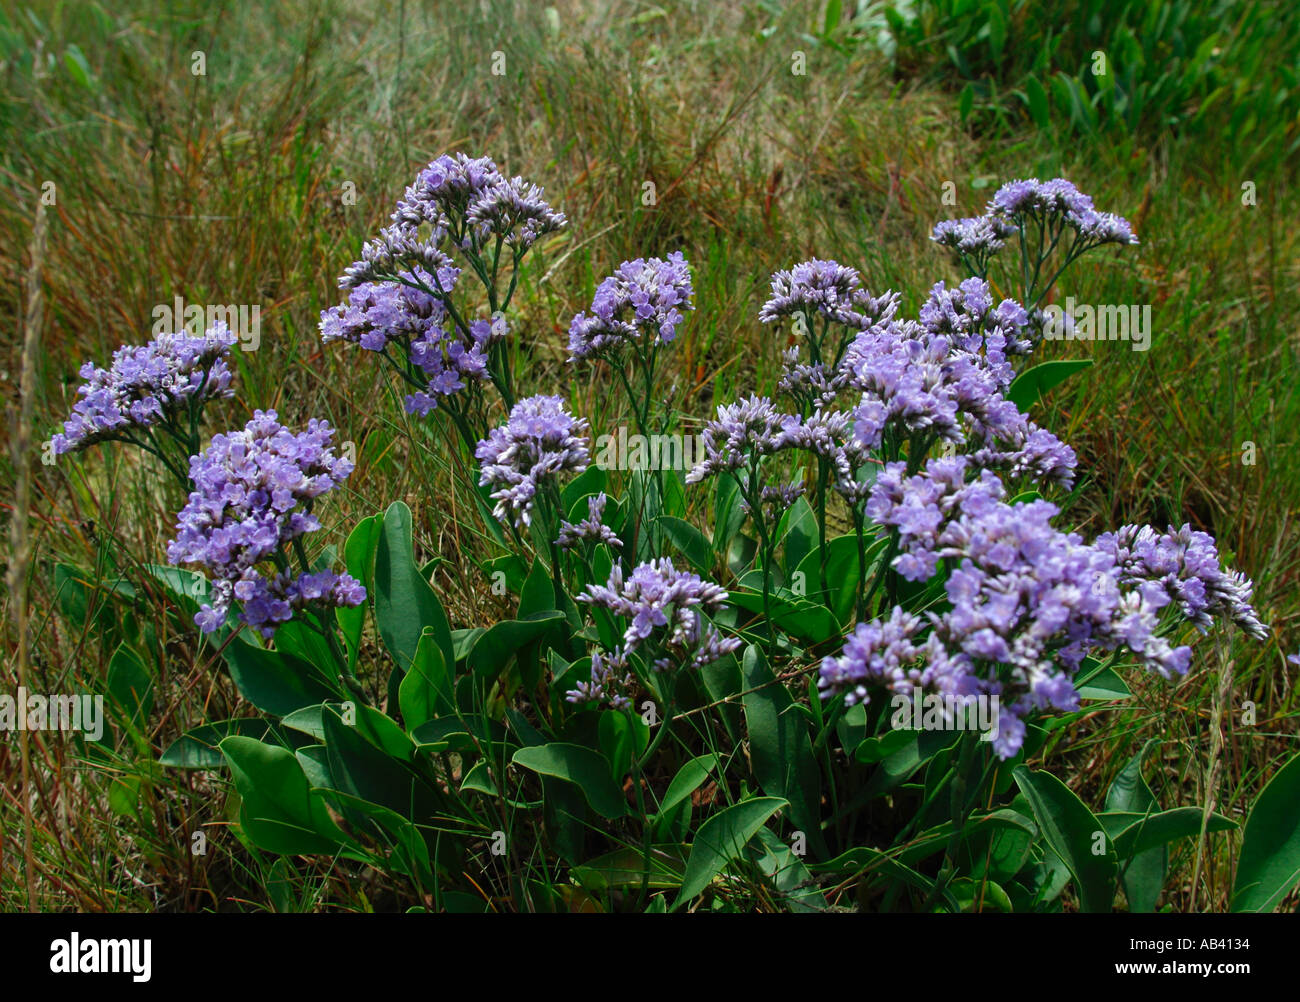 Limonium Latifolium. Sea lavender plant flowering in coastal habitat